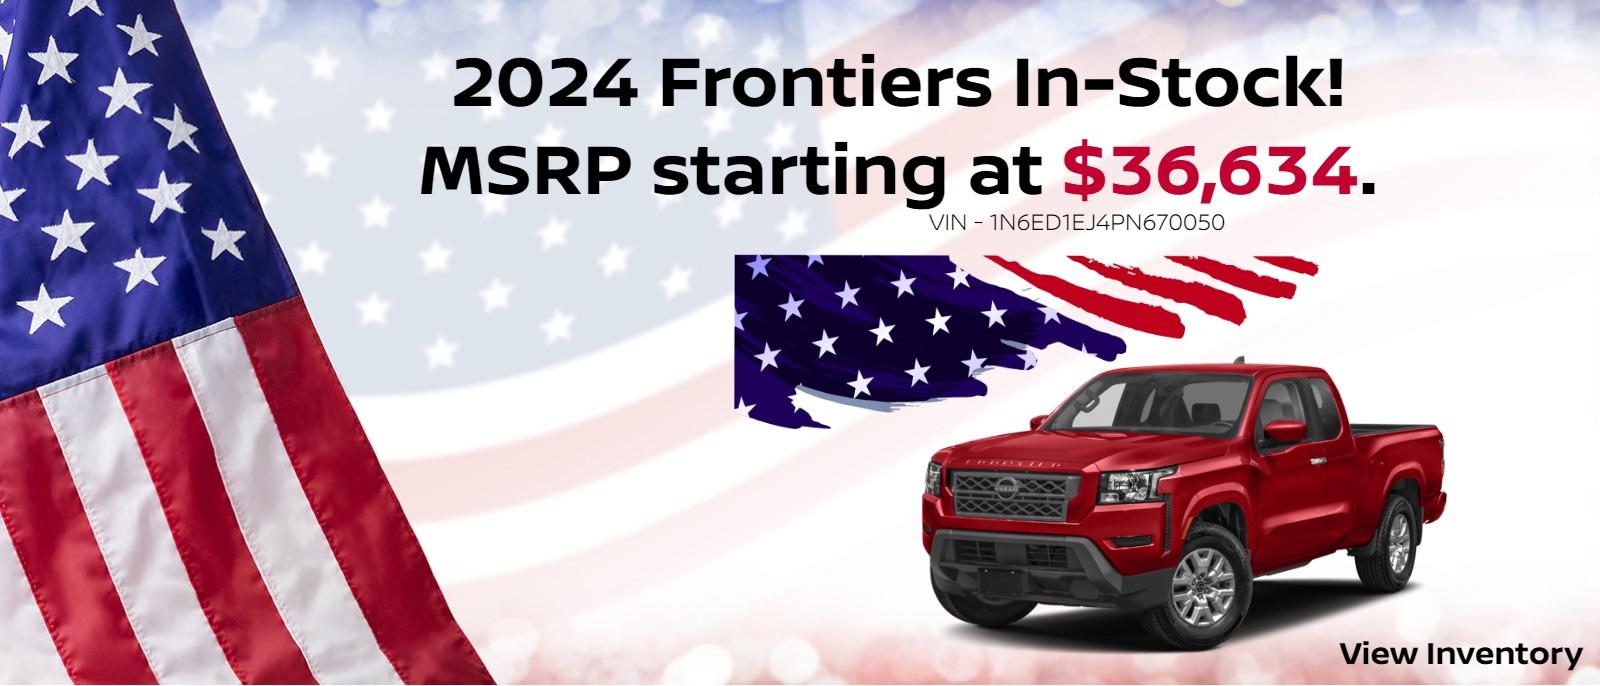 2024 Frontiers In-Stock!